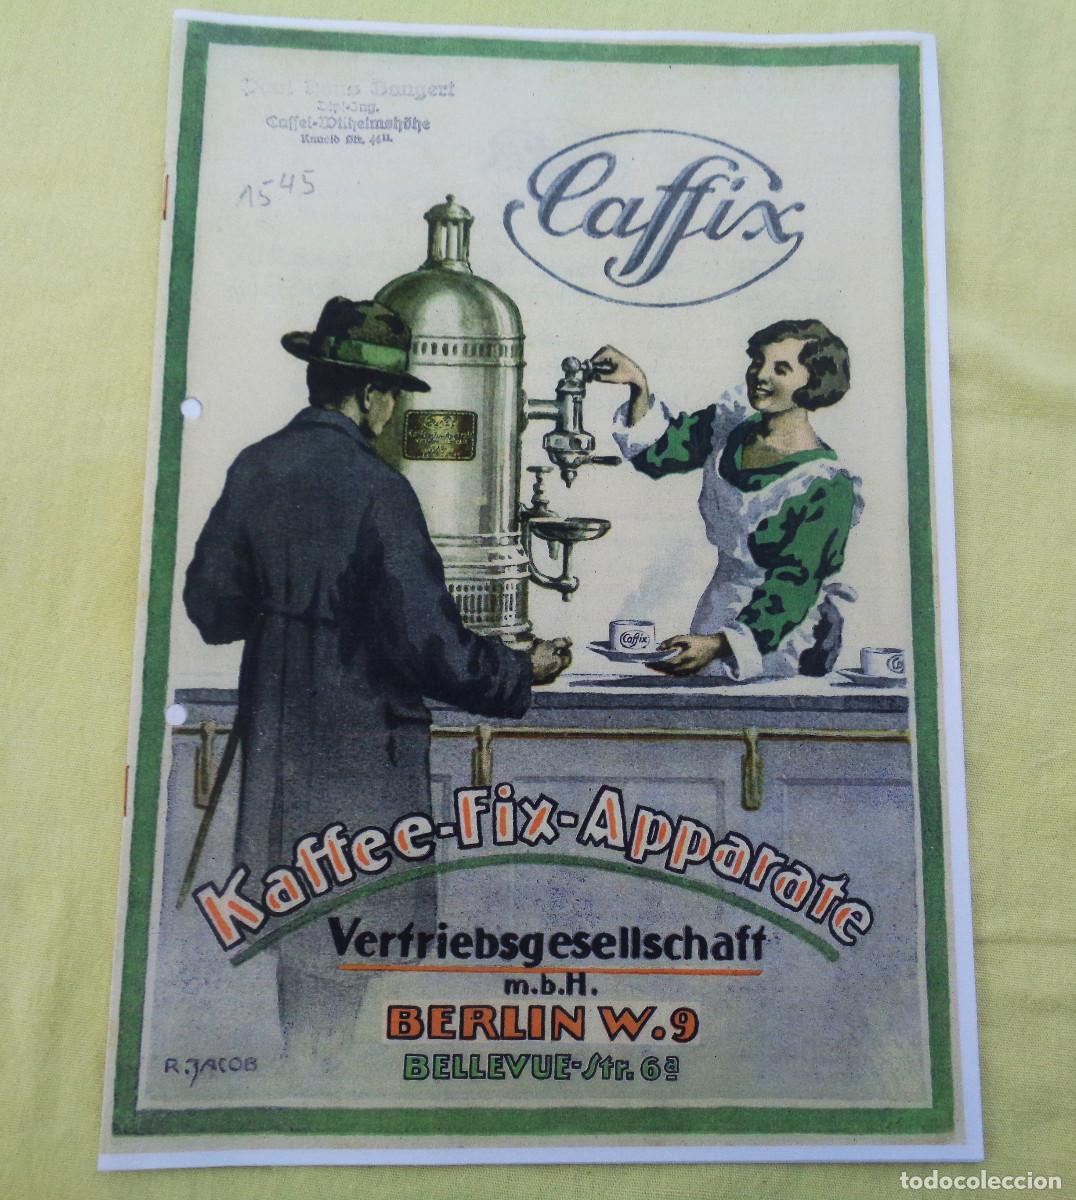 publicidad - antiguo anuncio cafetera solac - Compra venta en todocoleccion